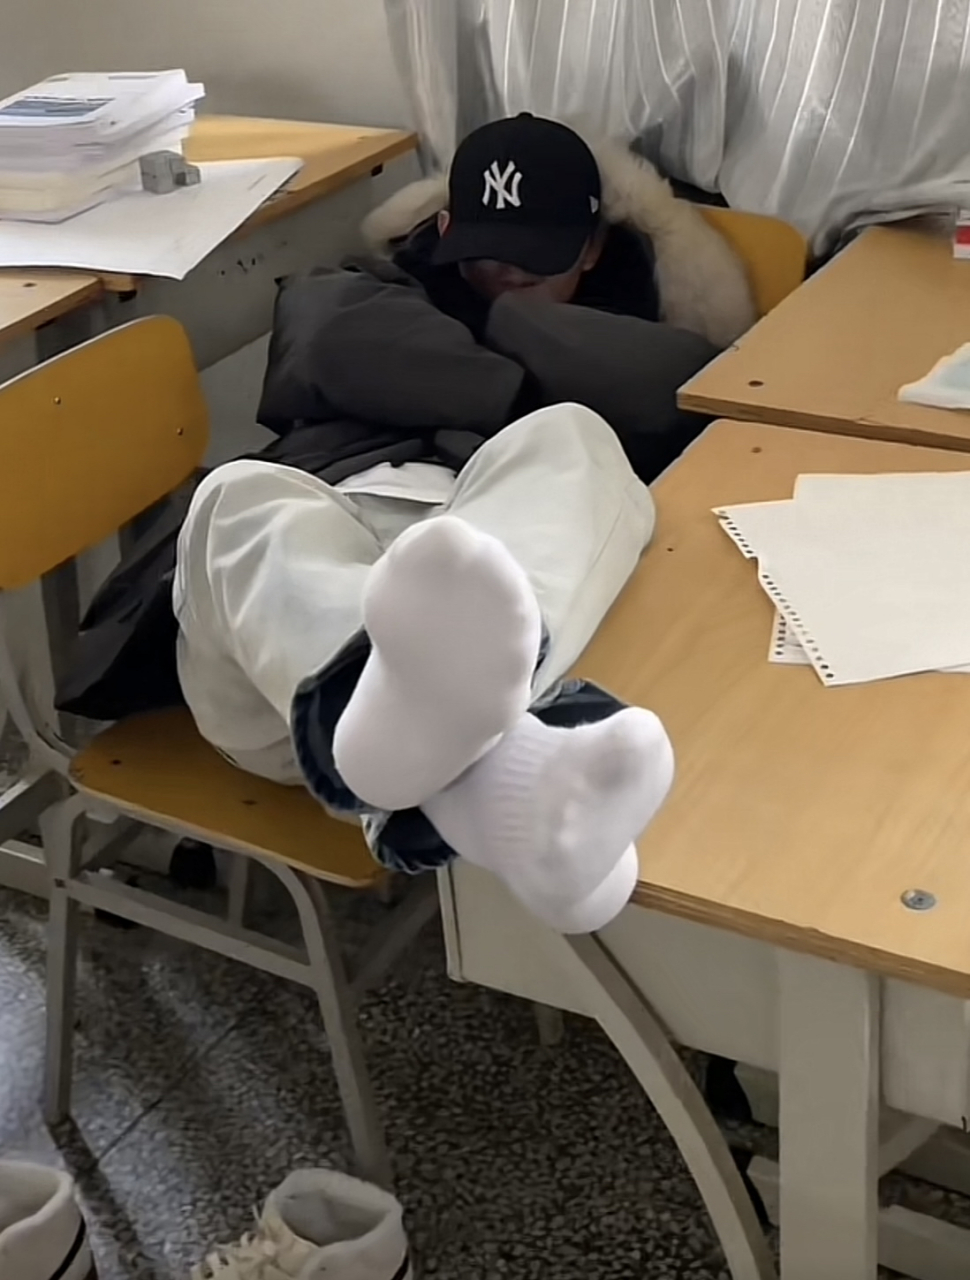 体育生同学真是讨厌,睡觉举着个穿着白袜的大脚让人不能安心学习!